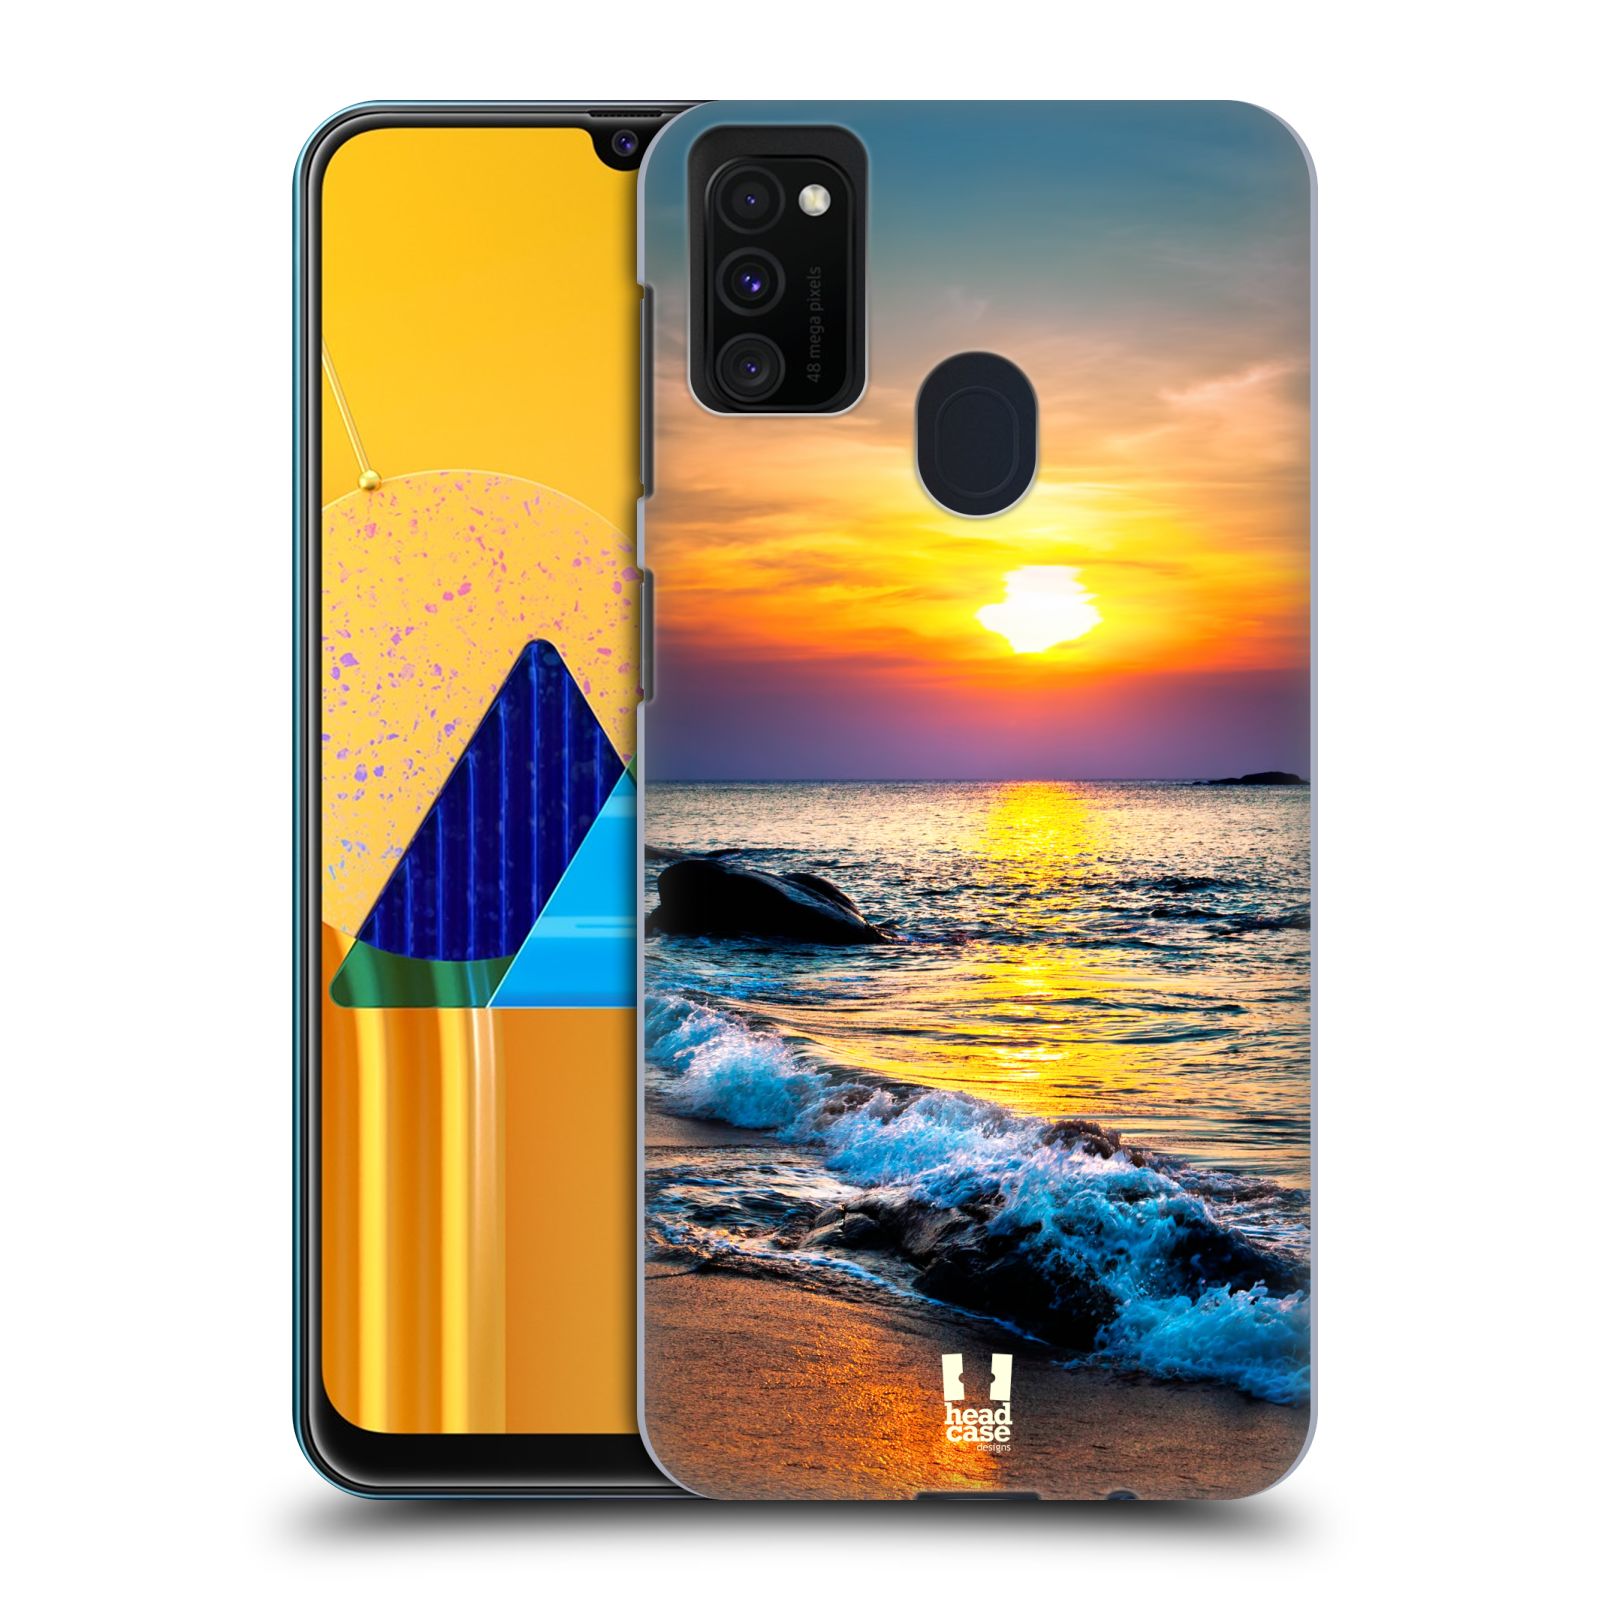 Plastový obal HEAD CASE na mobil Samsung Galaxy M30s vzor Pláže a Moře barevný západ slunce